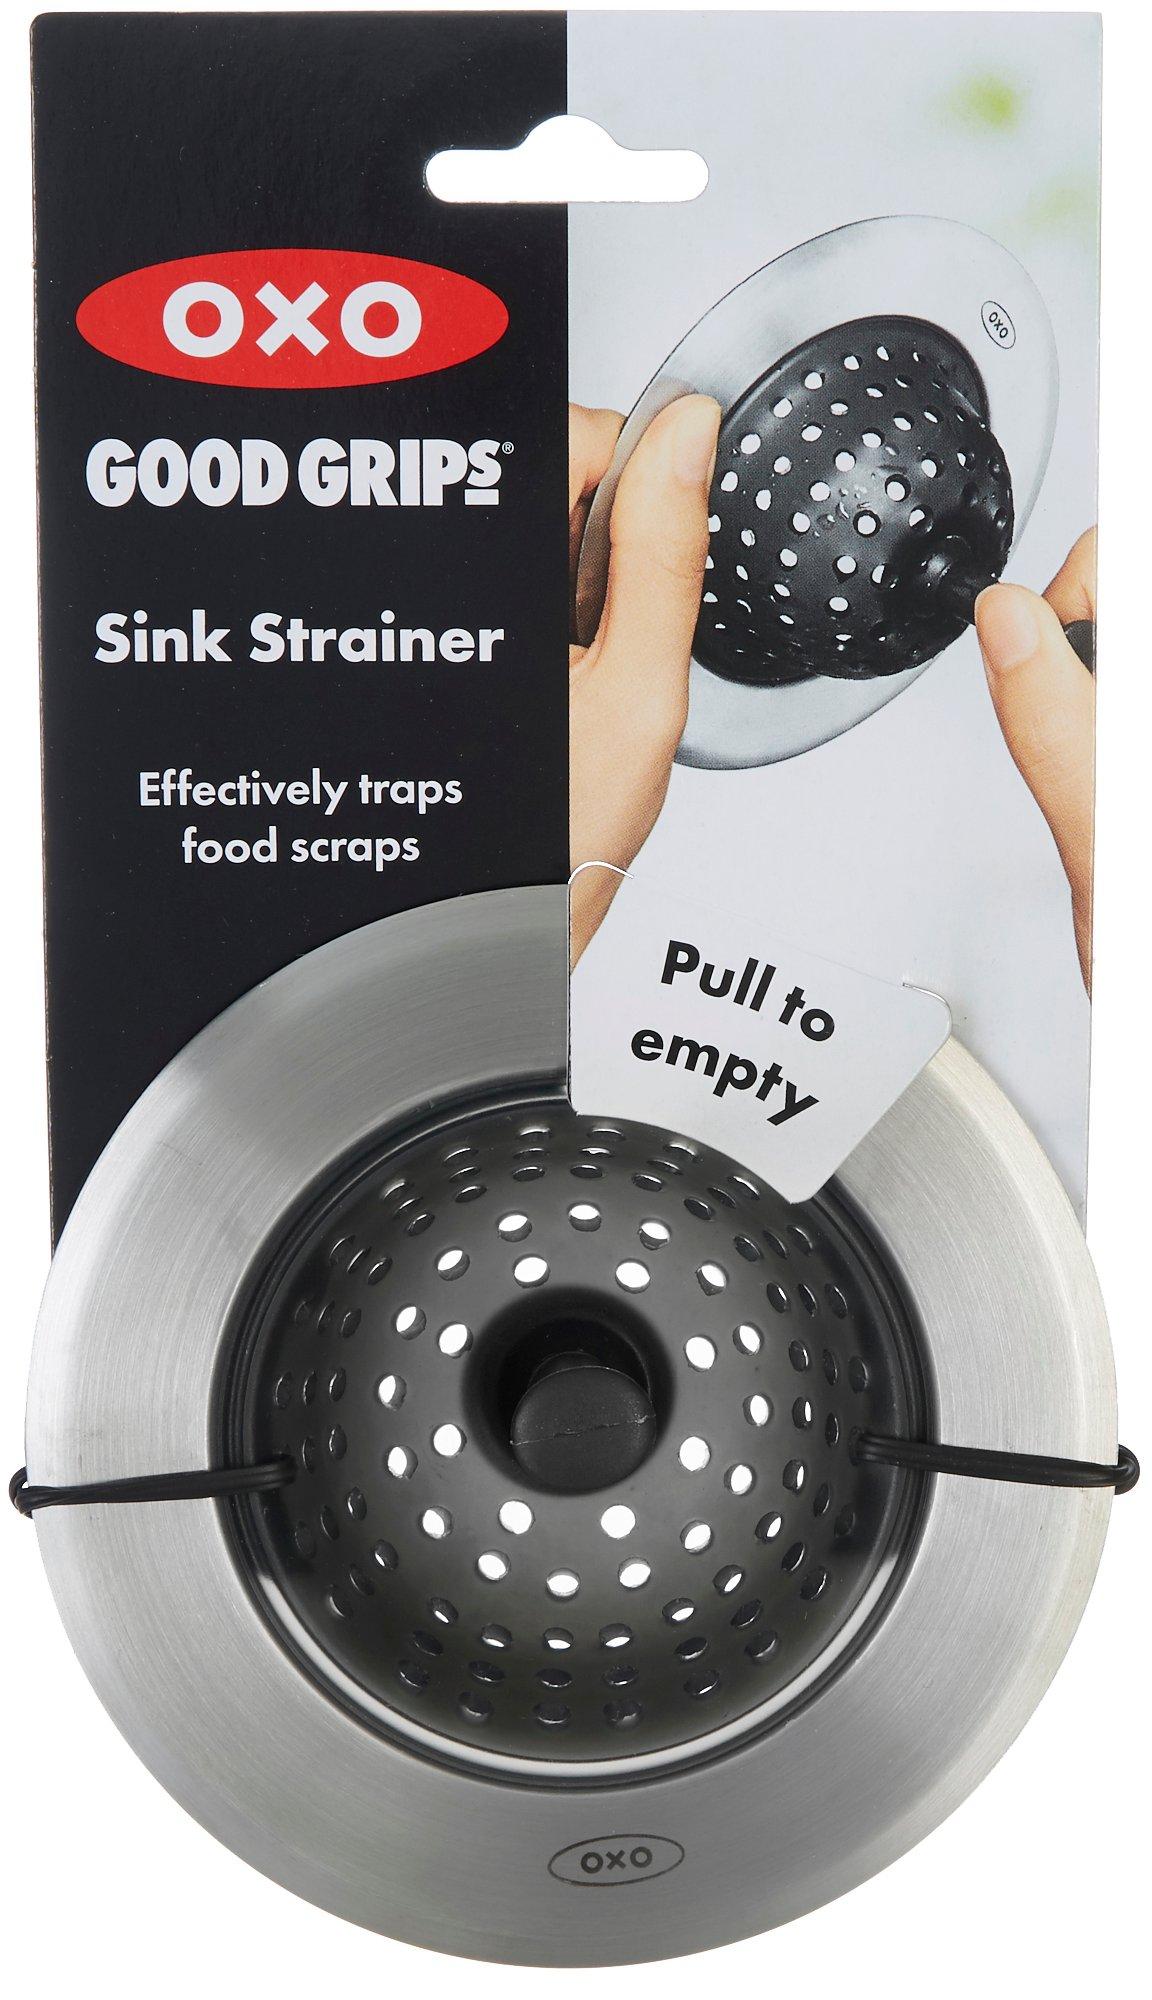 Good Grips Sink Strainer